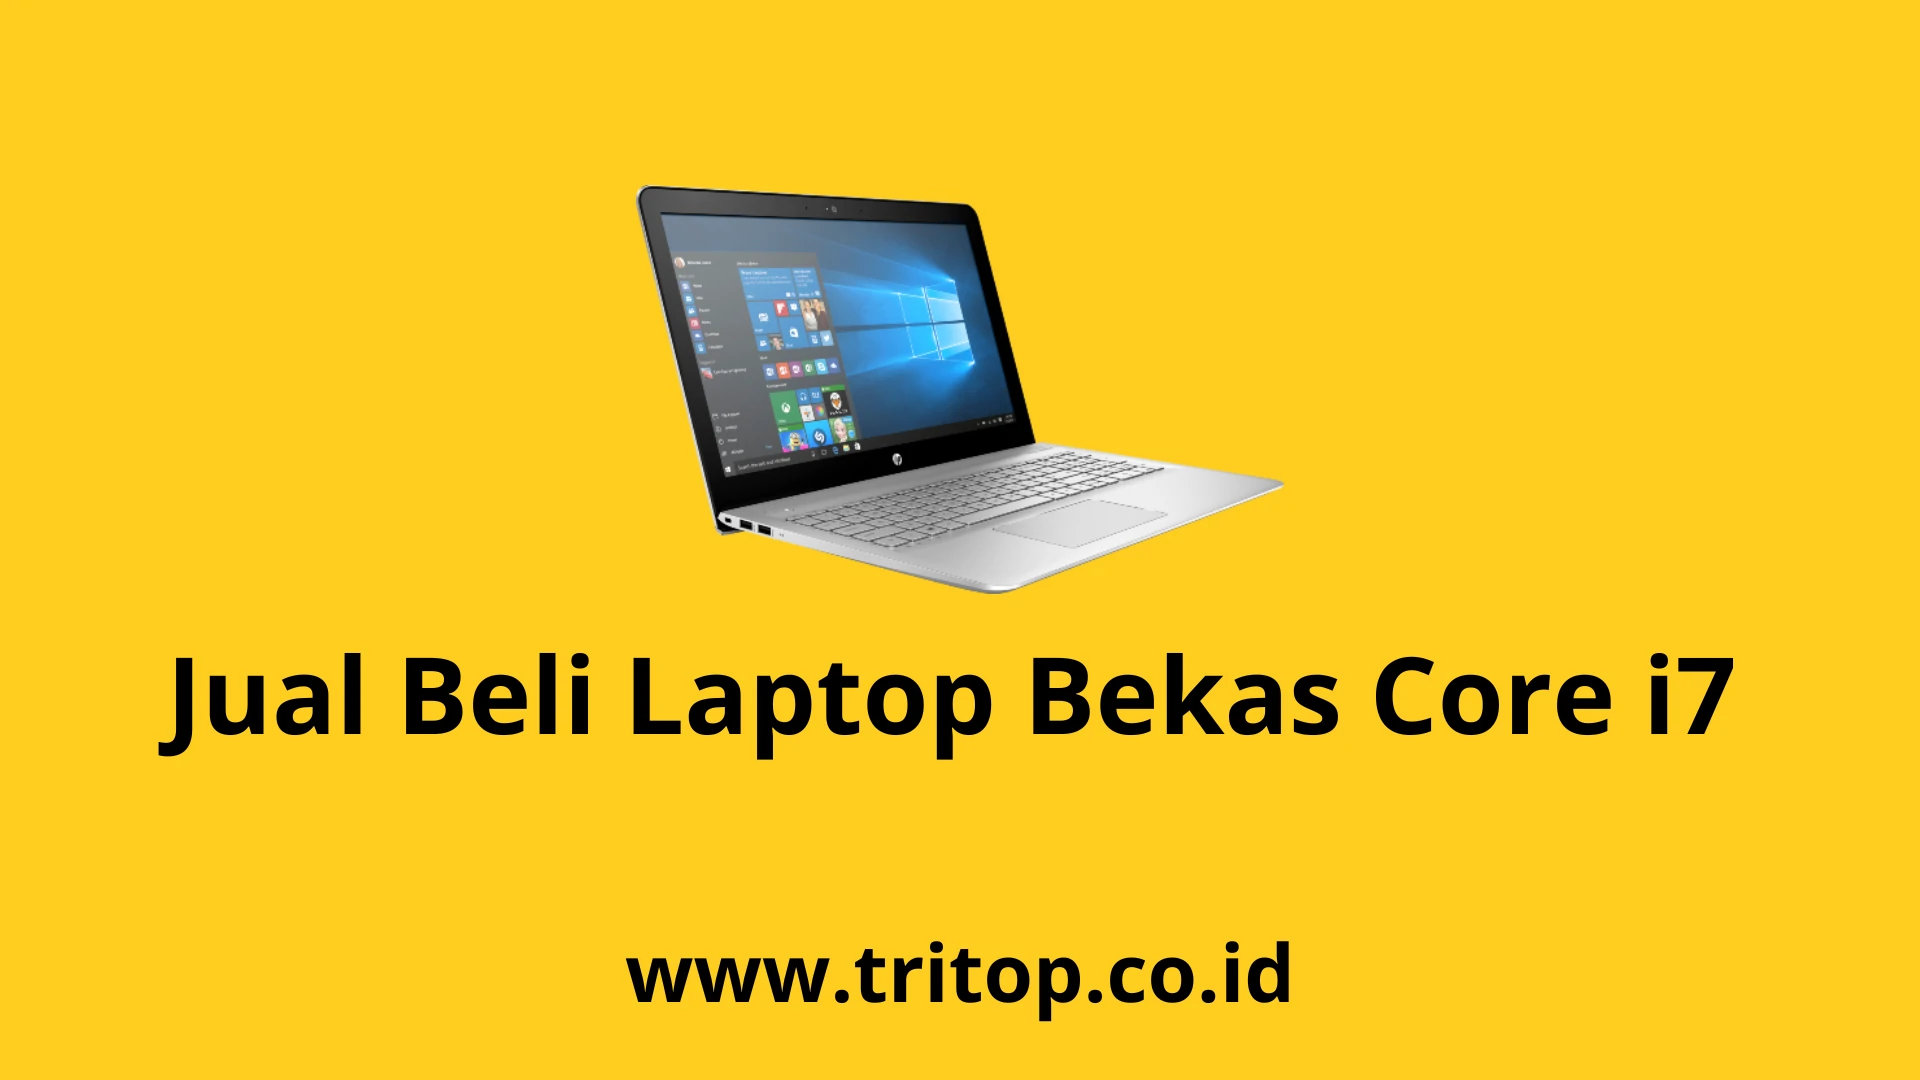 Jual Laptop Bekas Core i7 www.tritop.co.id